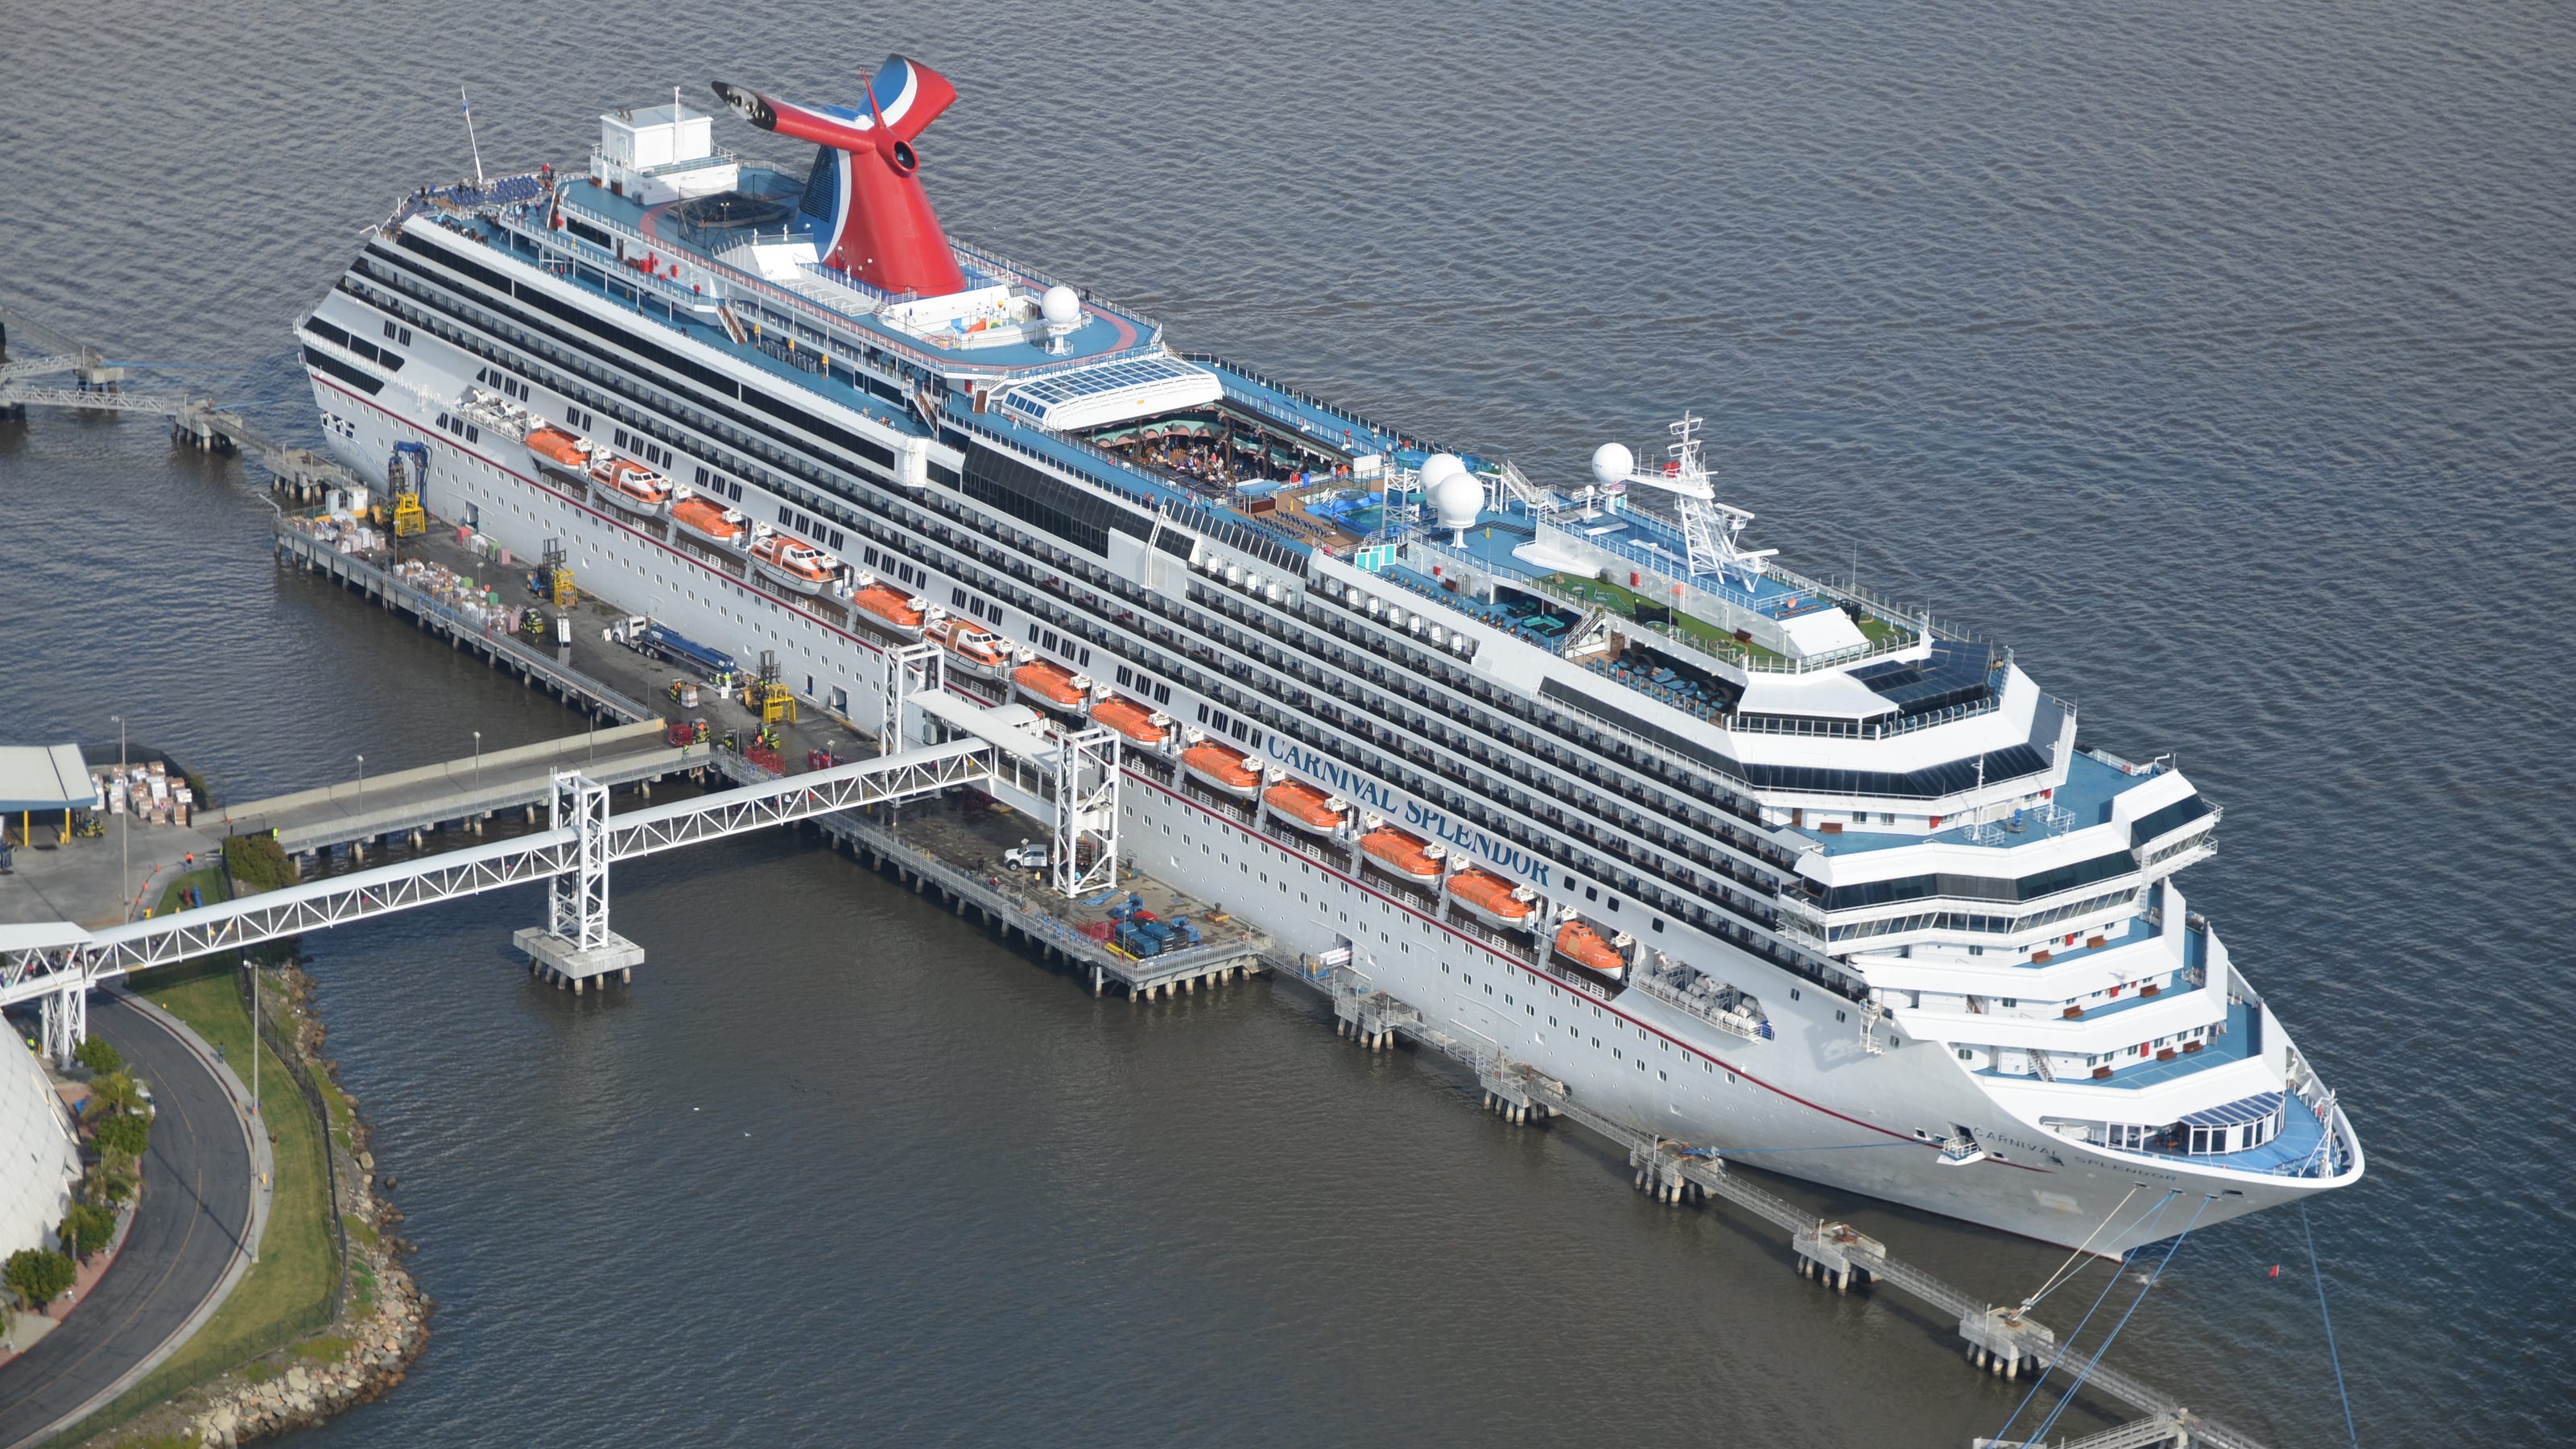 Carnival Cruise Ship Splendor Photos Cruise Everyday